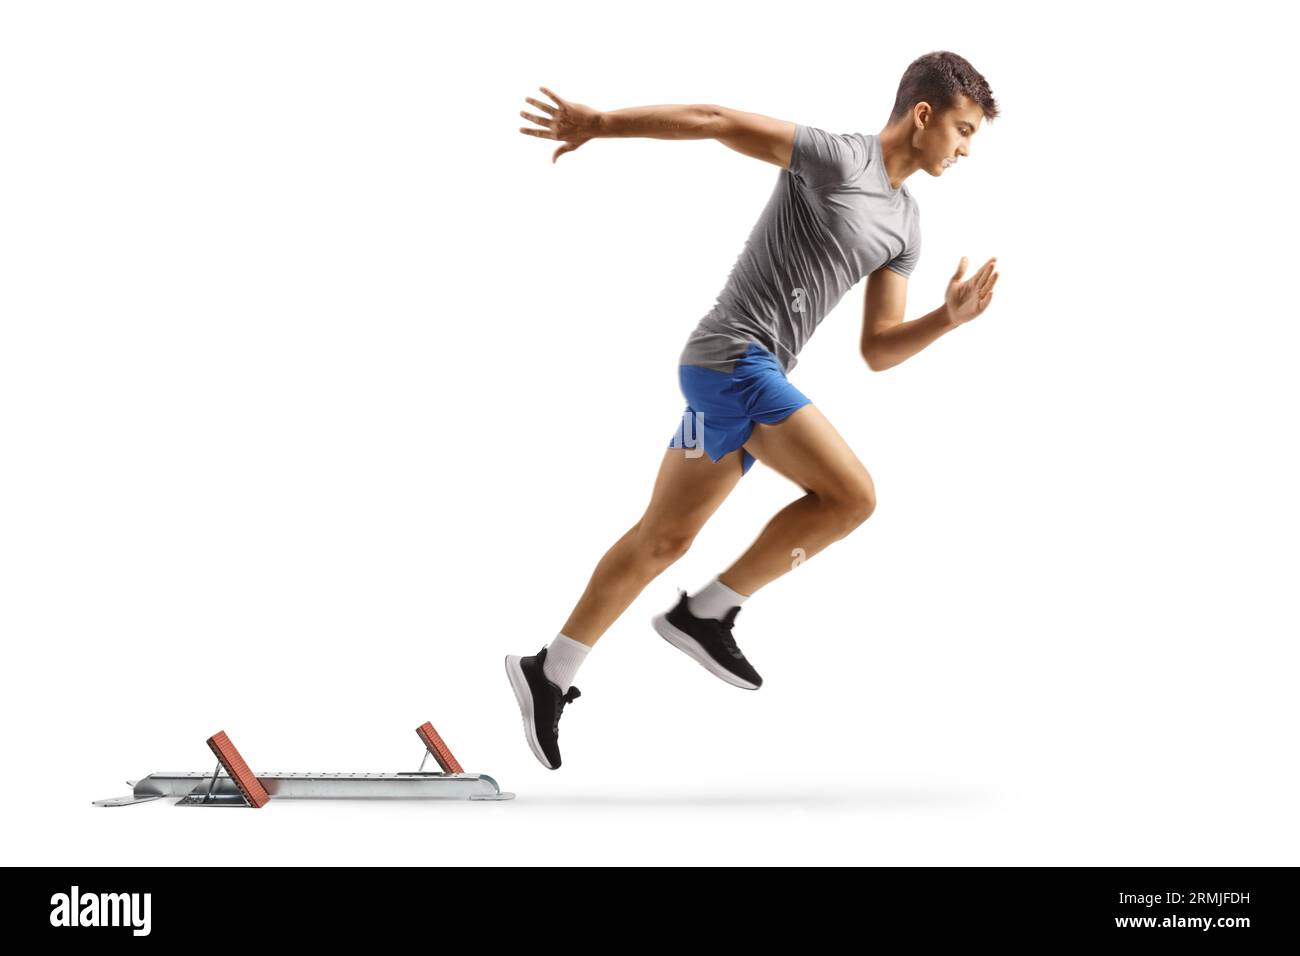 Profilaufnahme in voller Länge eines FIT Guys beim Laufen mit Startblöcken, isoliert auf weißem Hintergrund Stockfoto